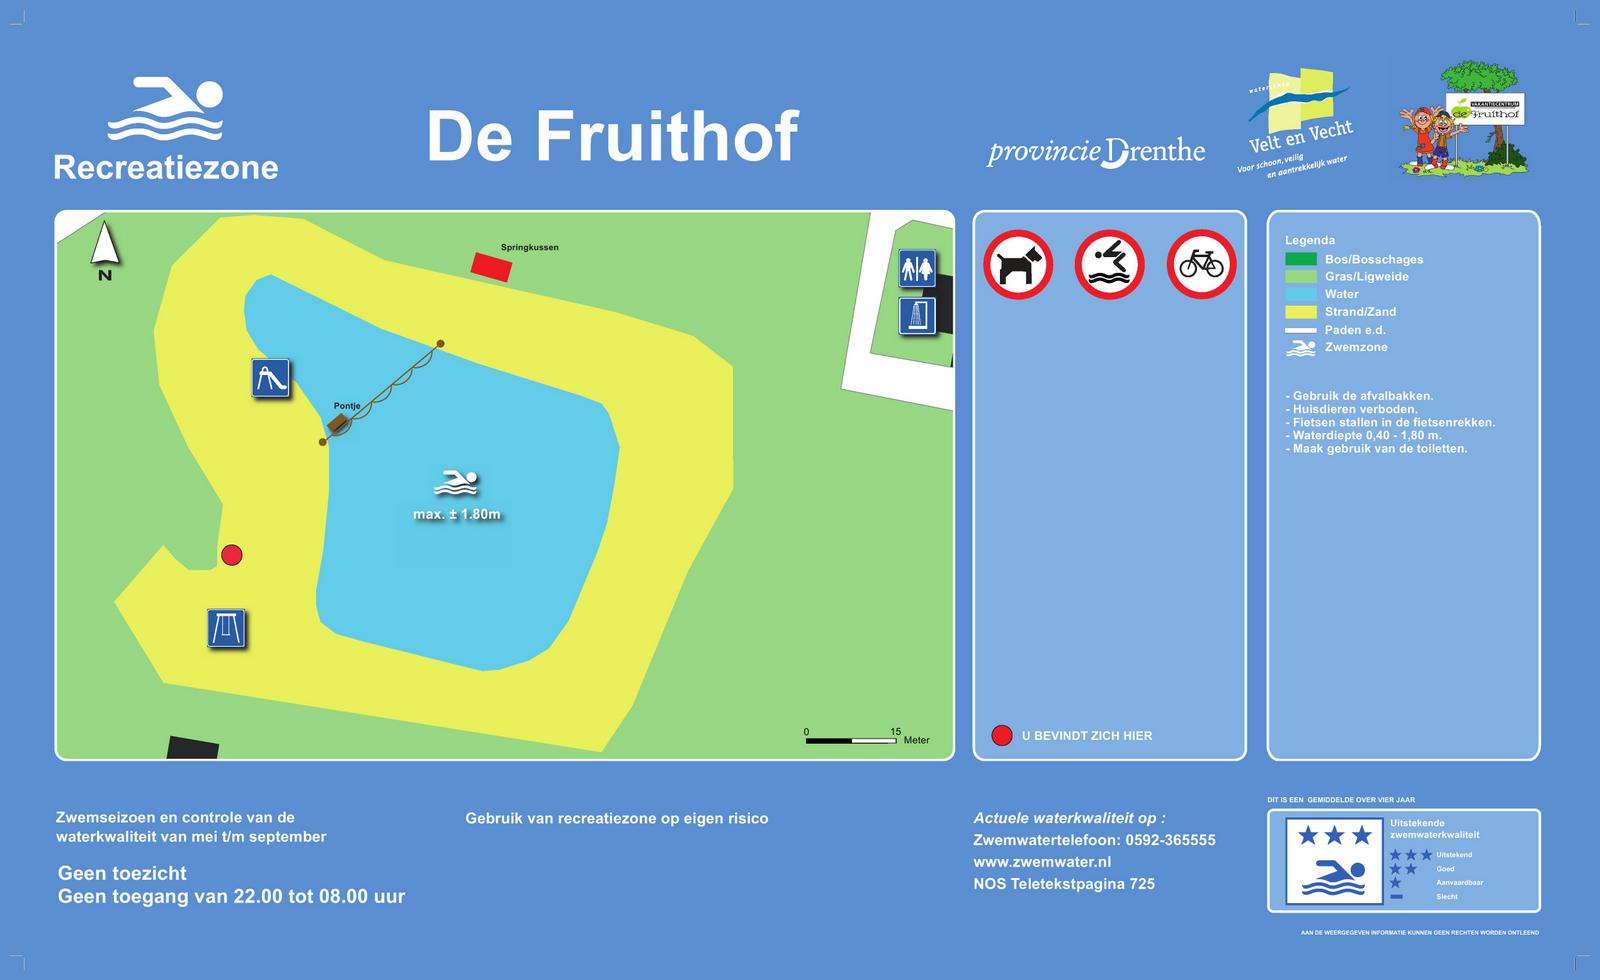 Het informatiebord bij zwemlocatie De Fruithof